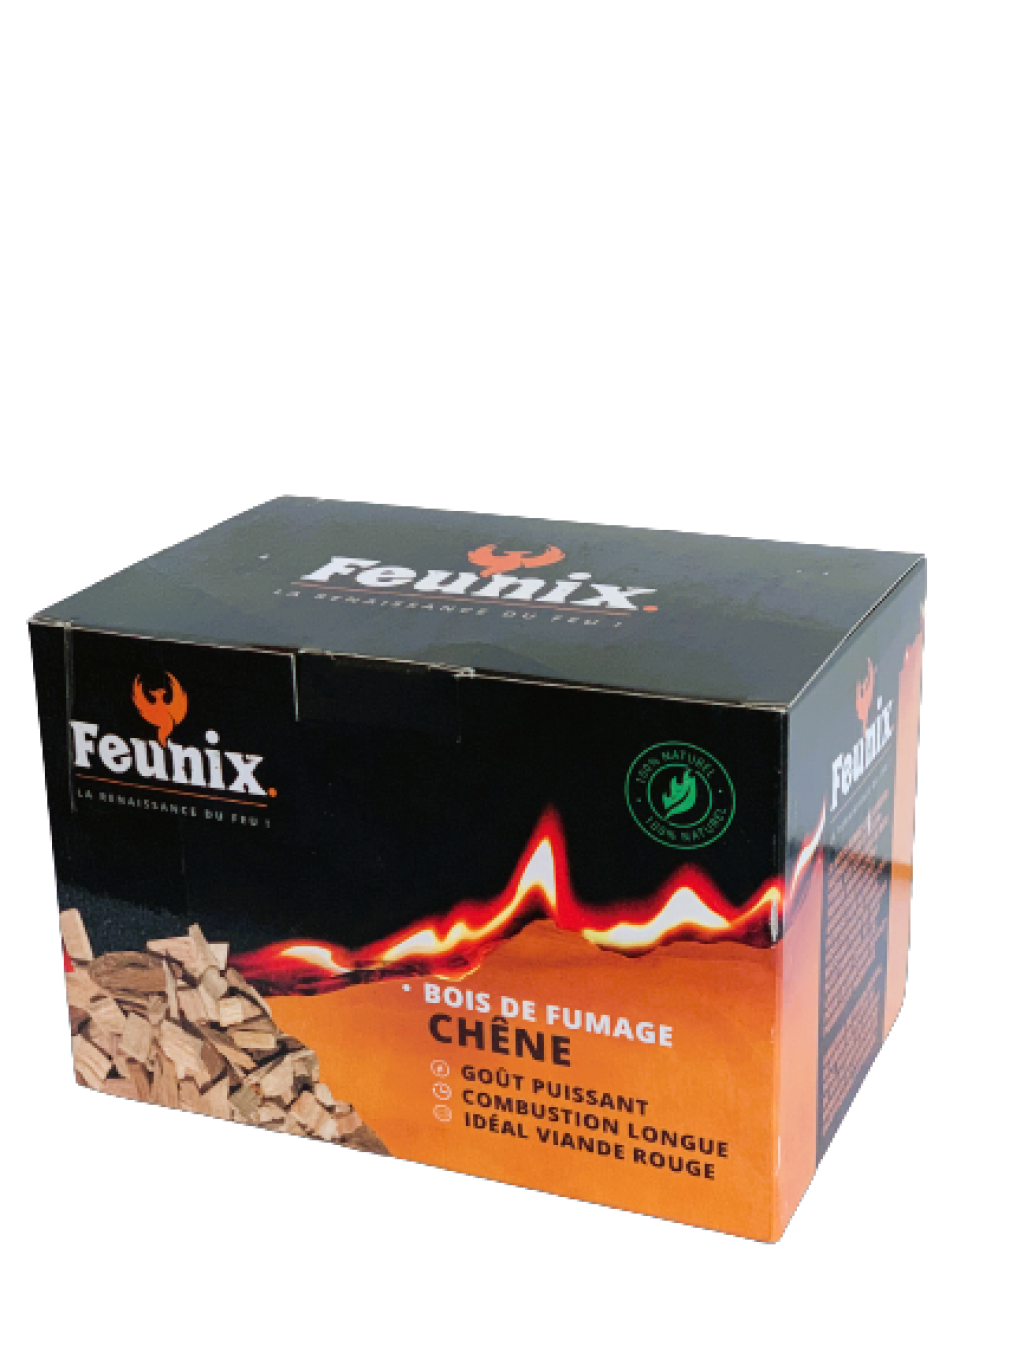 Retrouvez tous les produits Feunix sur ce catalogue - Produit Bois de fumage  chêne 0.00 € (Combustibles)